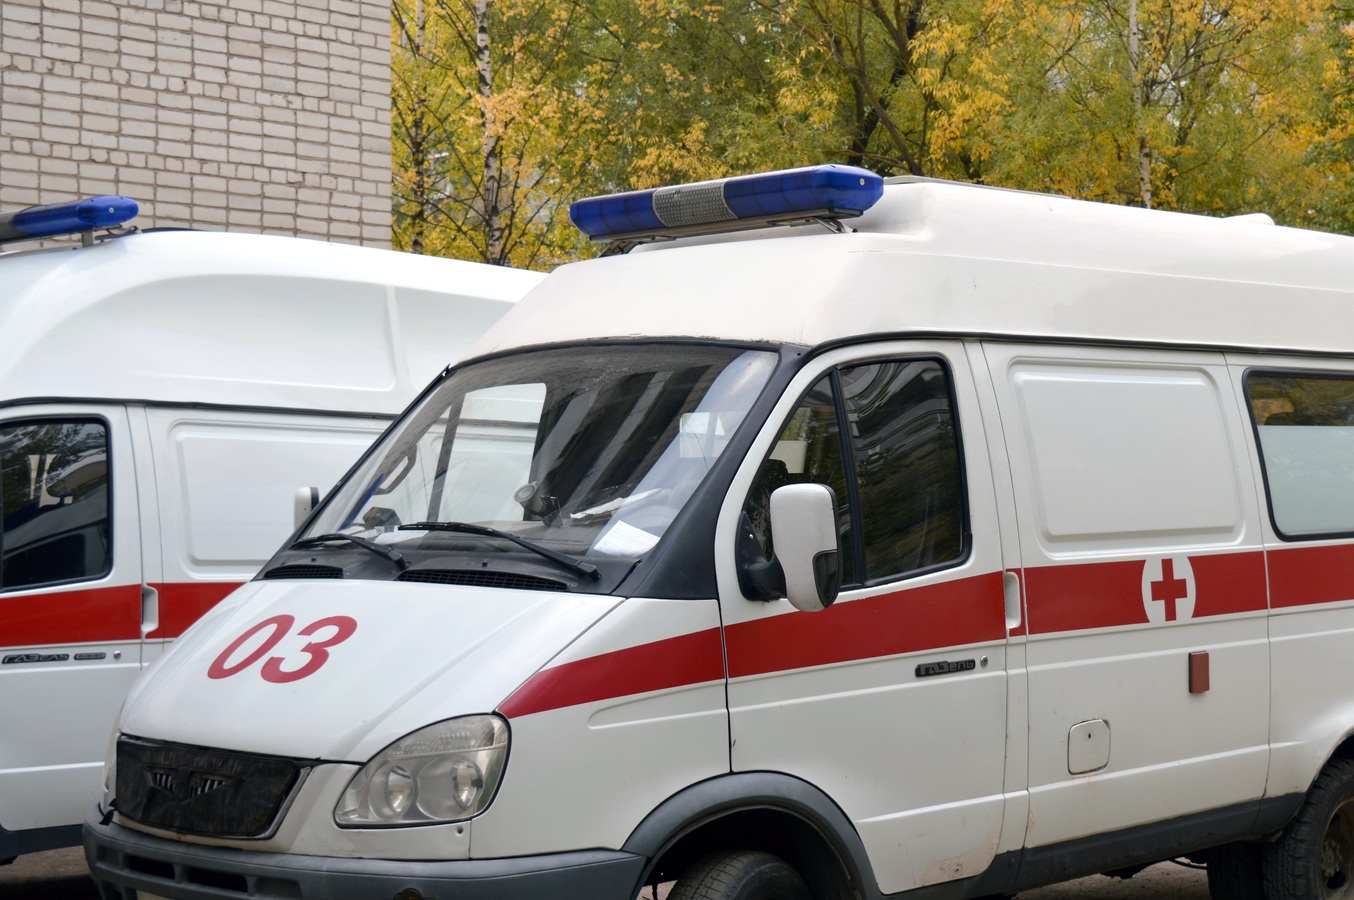 Виновные во всех бедах: в России растет число нападений на врачей и фельдшеров